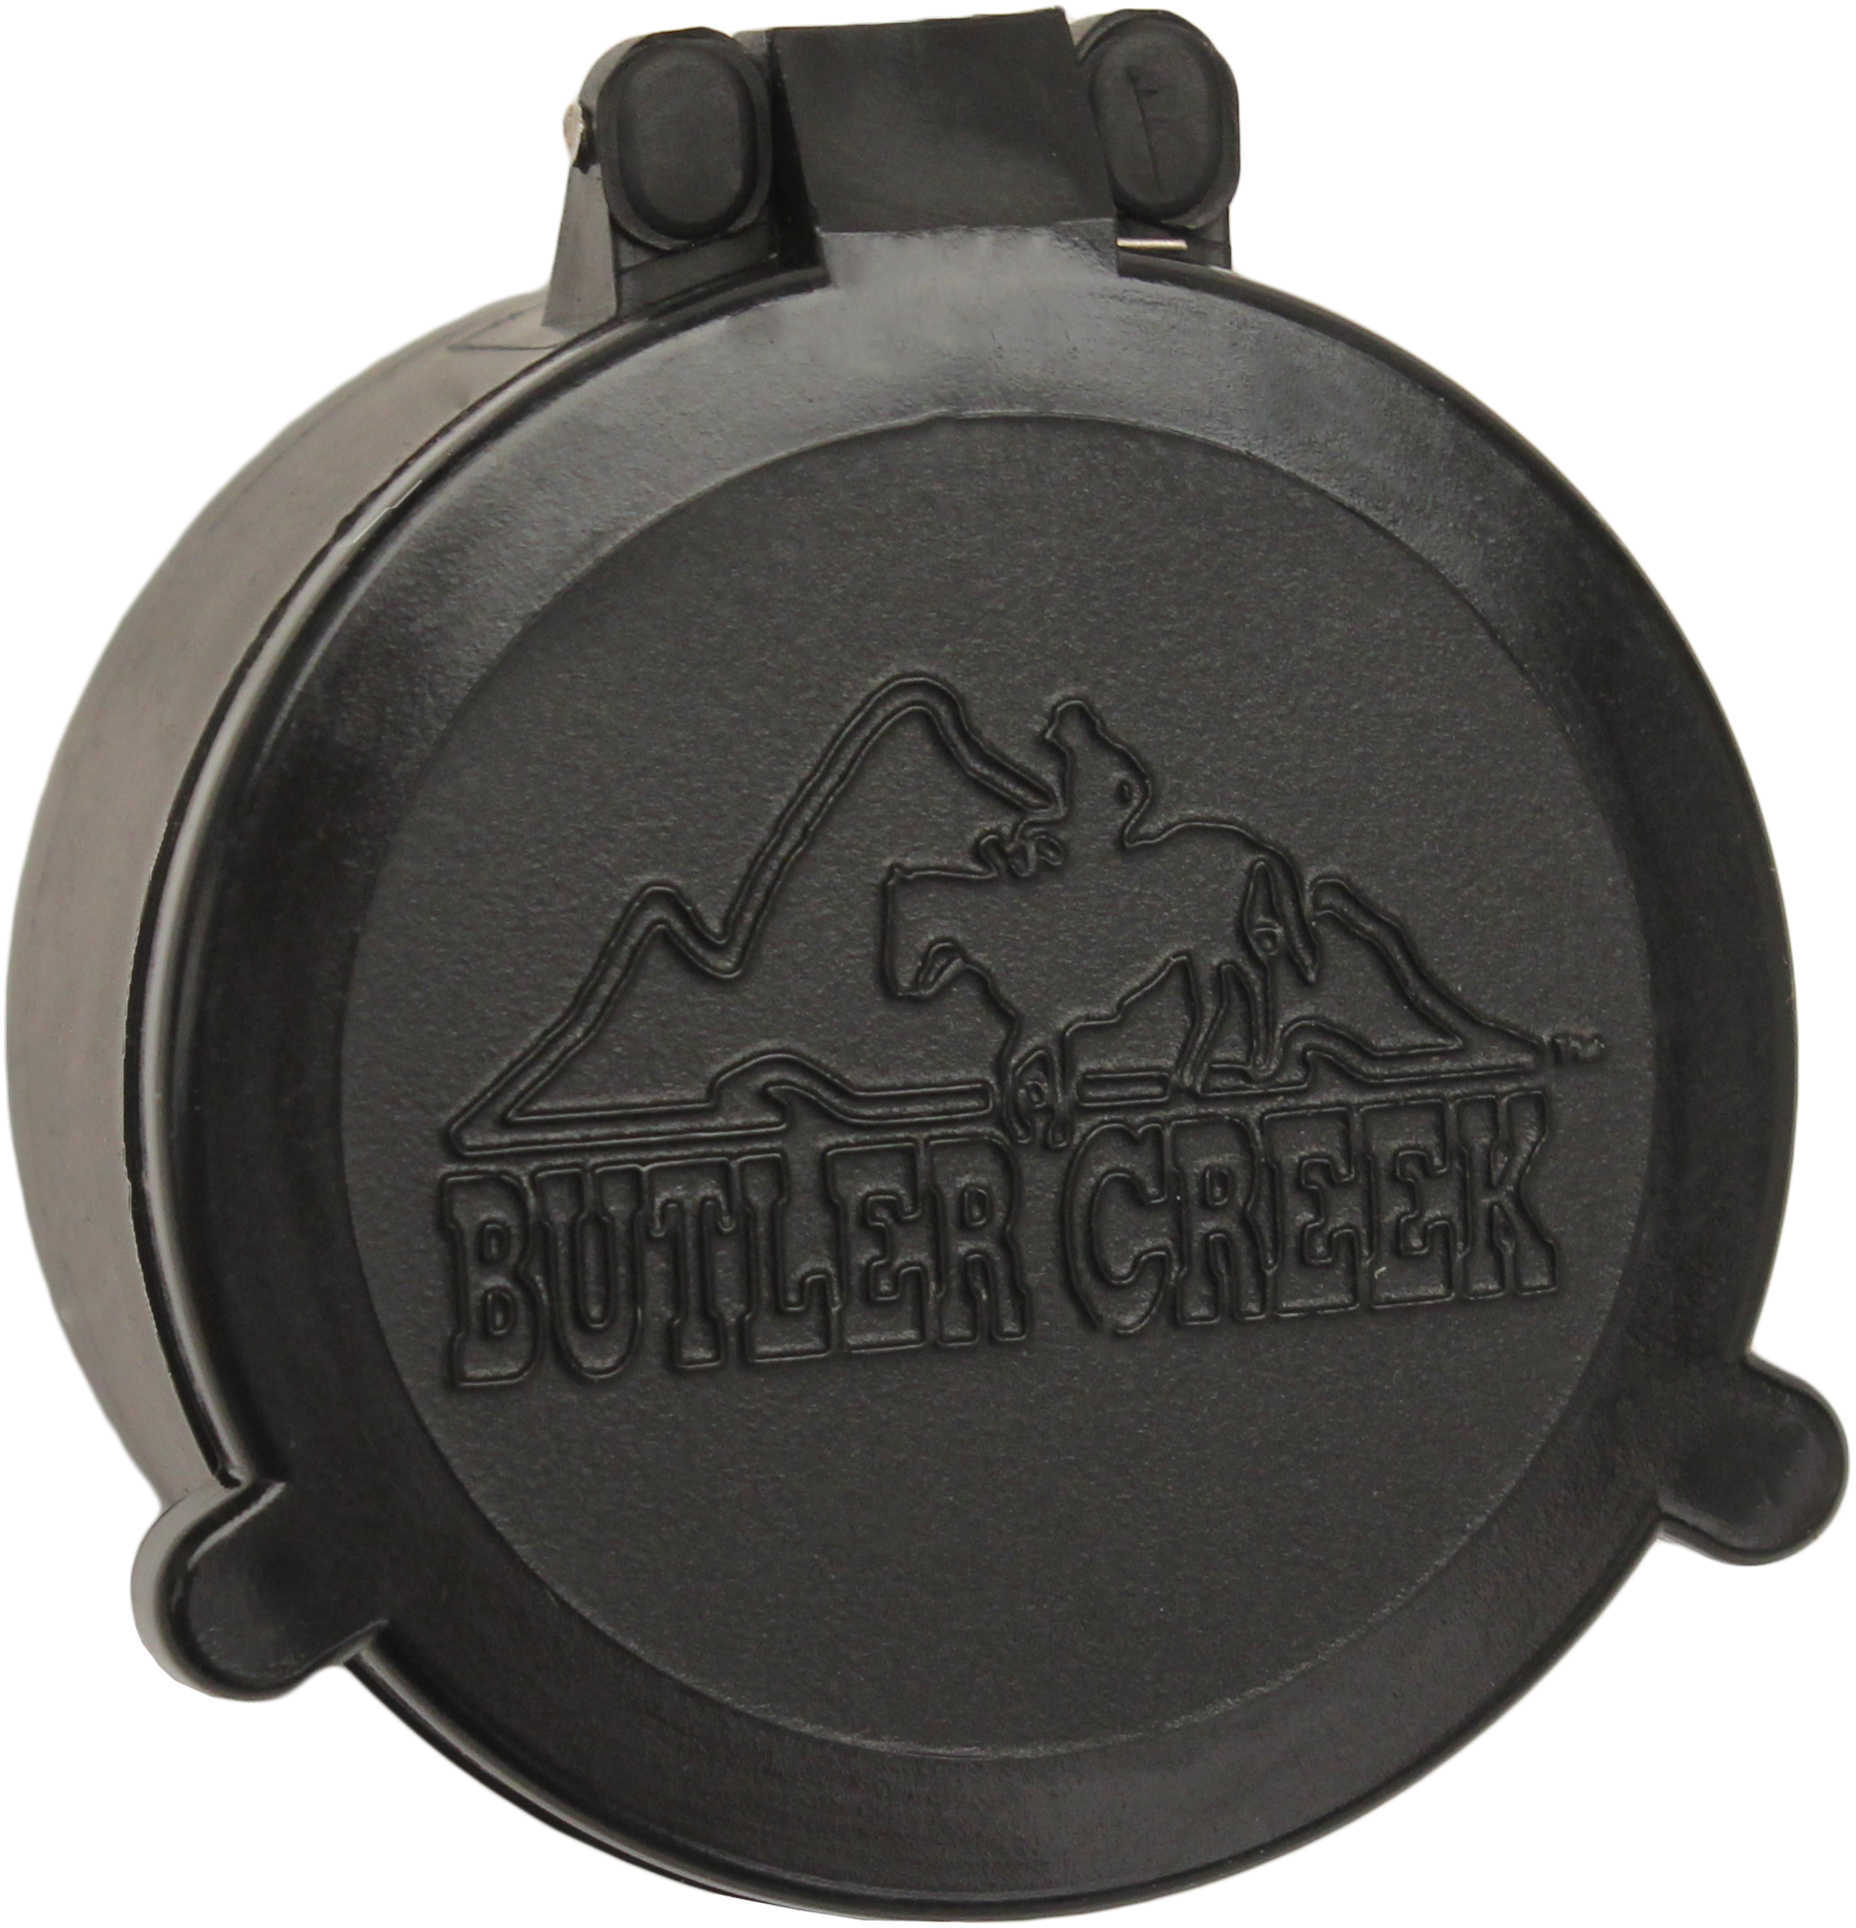 Butler Creek 30030 Flip-Open Scope Cover Objective Lens 33.00mm Slip On Polymer Black